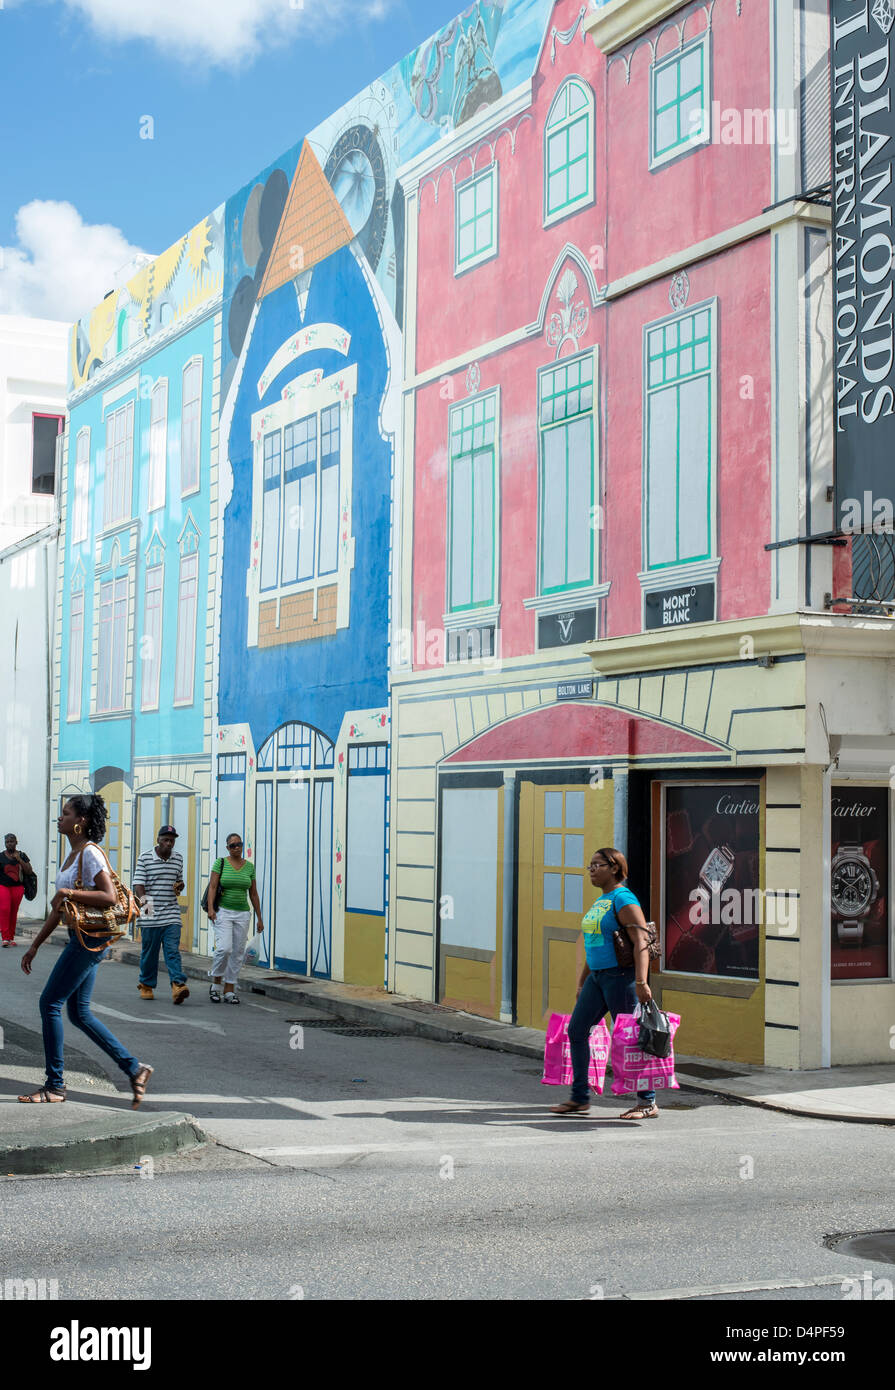 Bâtiments colorés peints sur le mur de rue à Bridgetown, capitale de la Barbade, Caraïbes, Antilles Banque D'Images